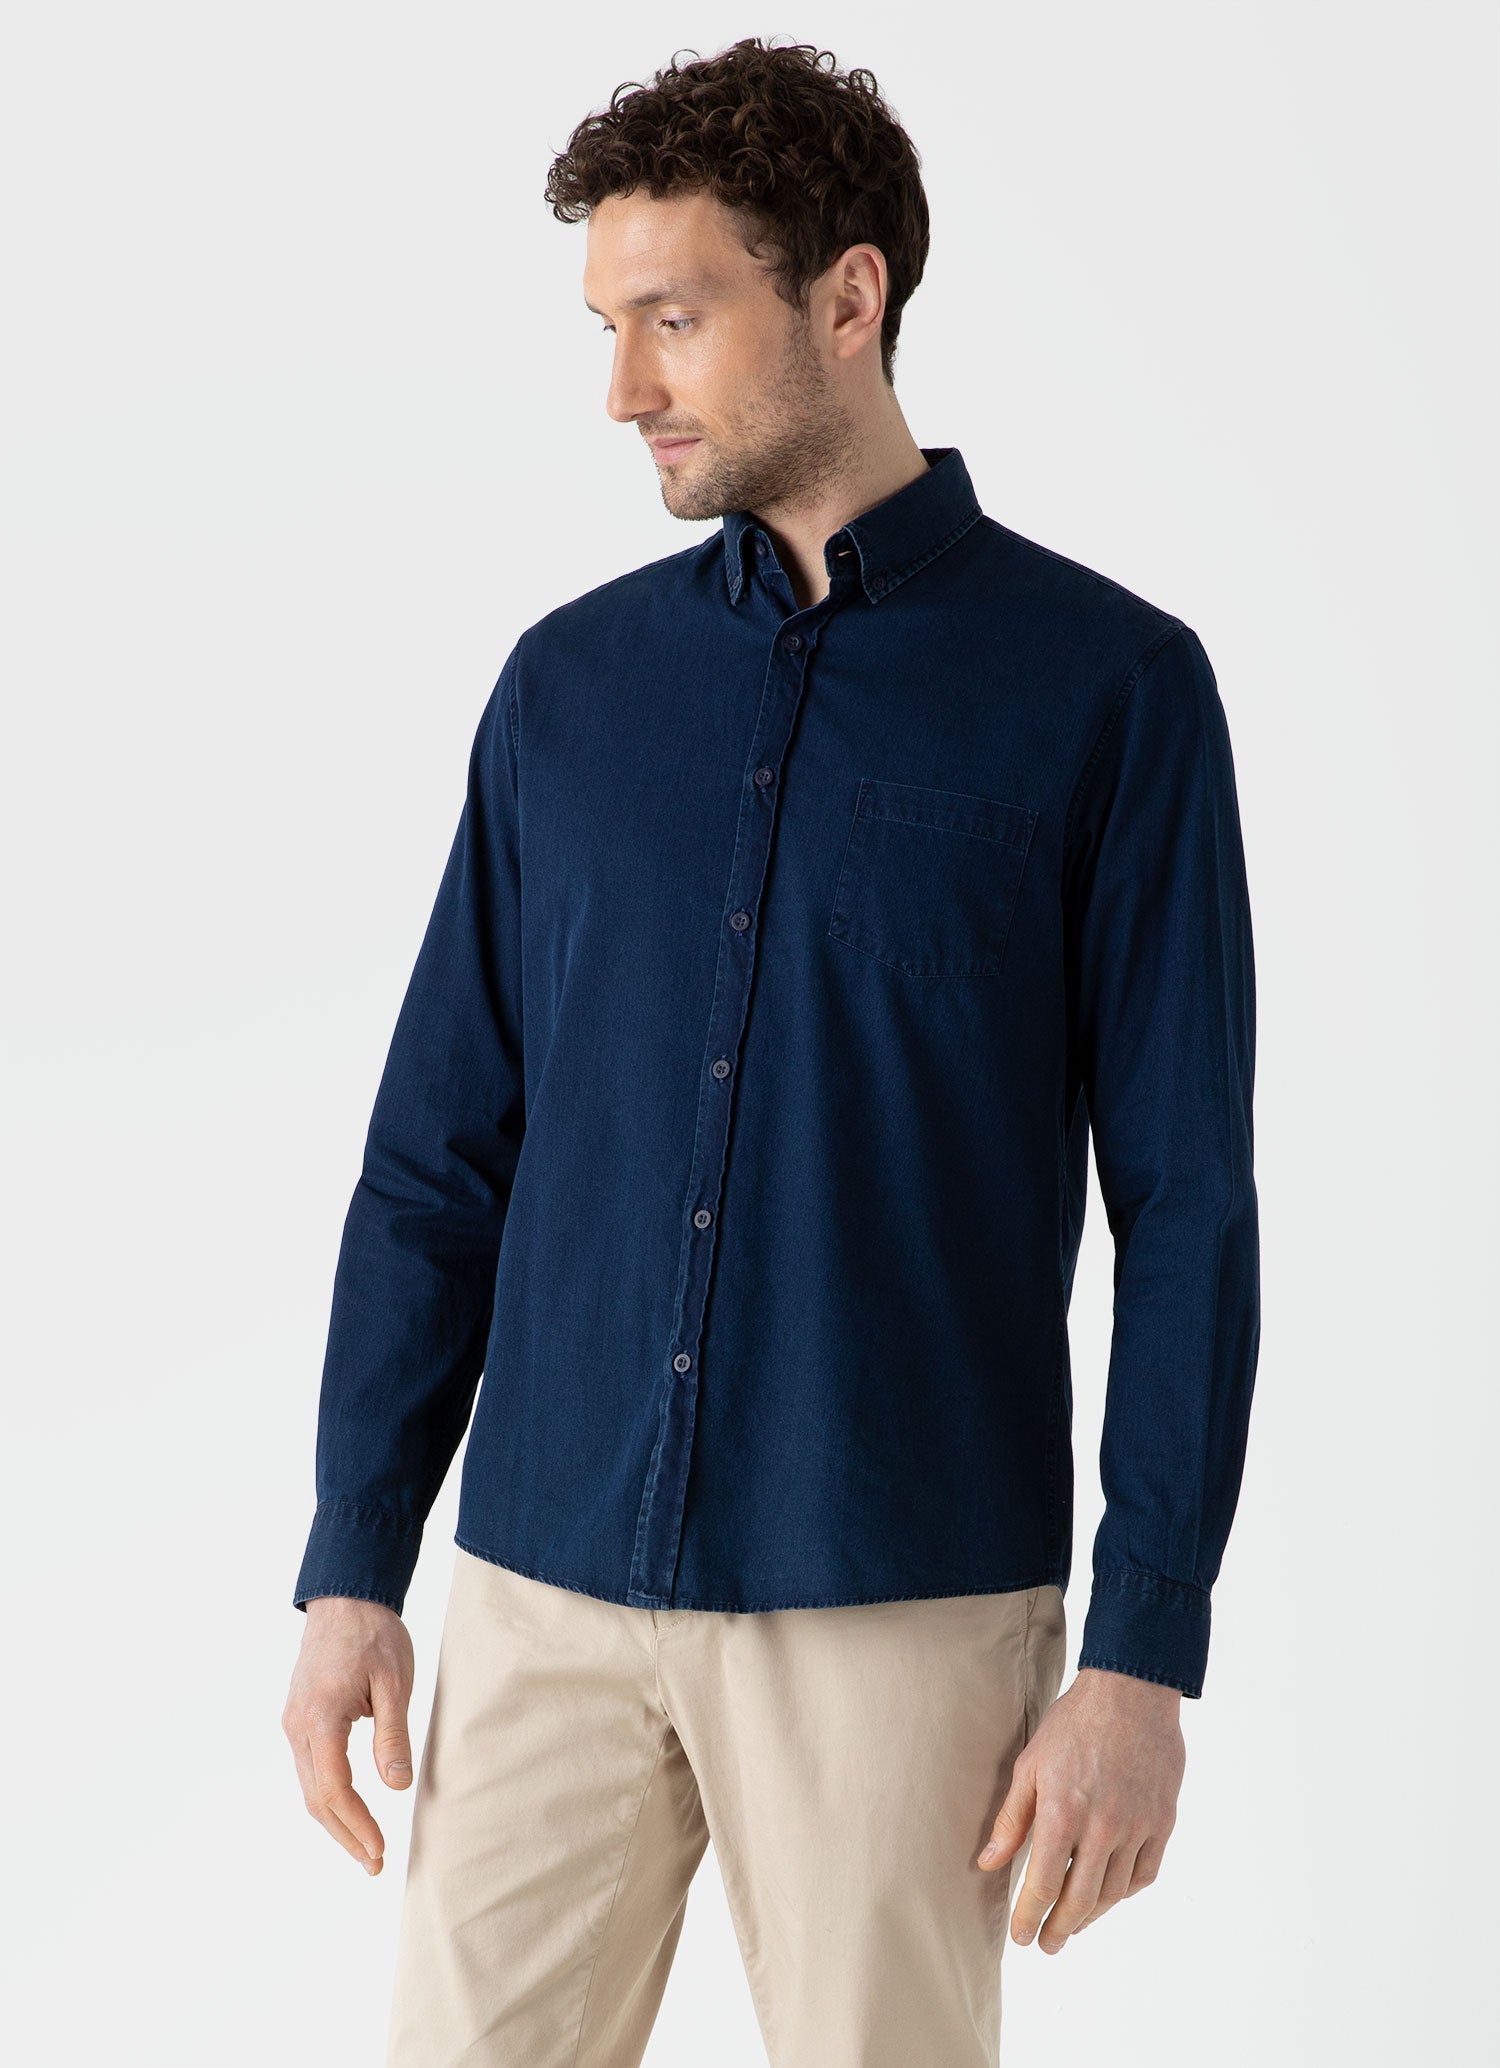 Buy Indigo Shirts for Men by U.S. Polo Assn. Online | Ajio.com